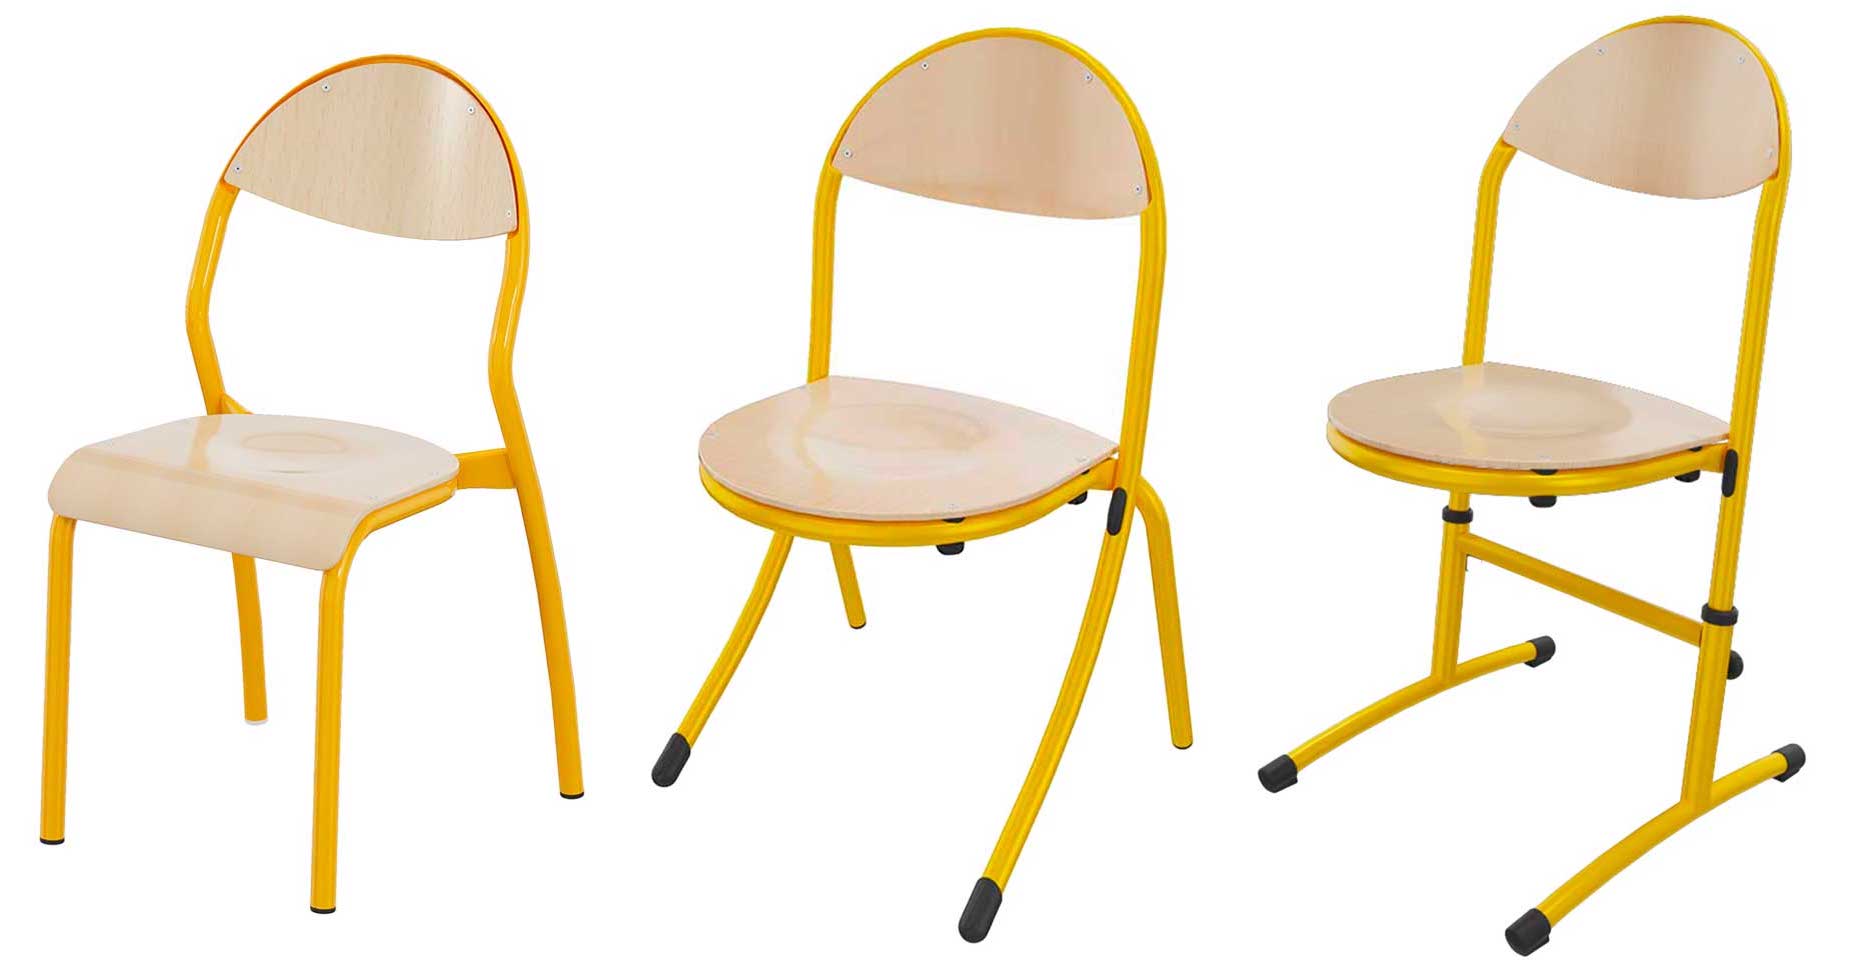 Dossier - Comment bien choisir la taille des chaises en crèche